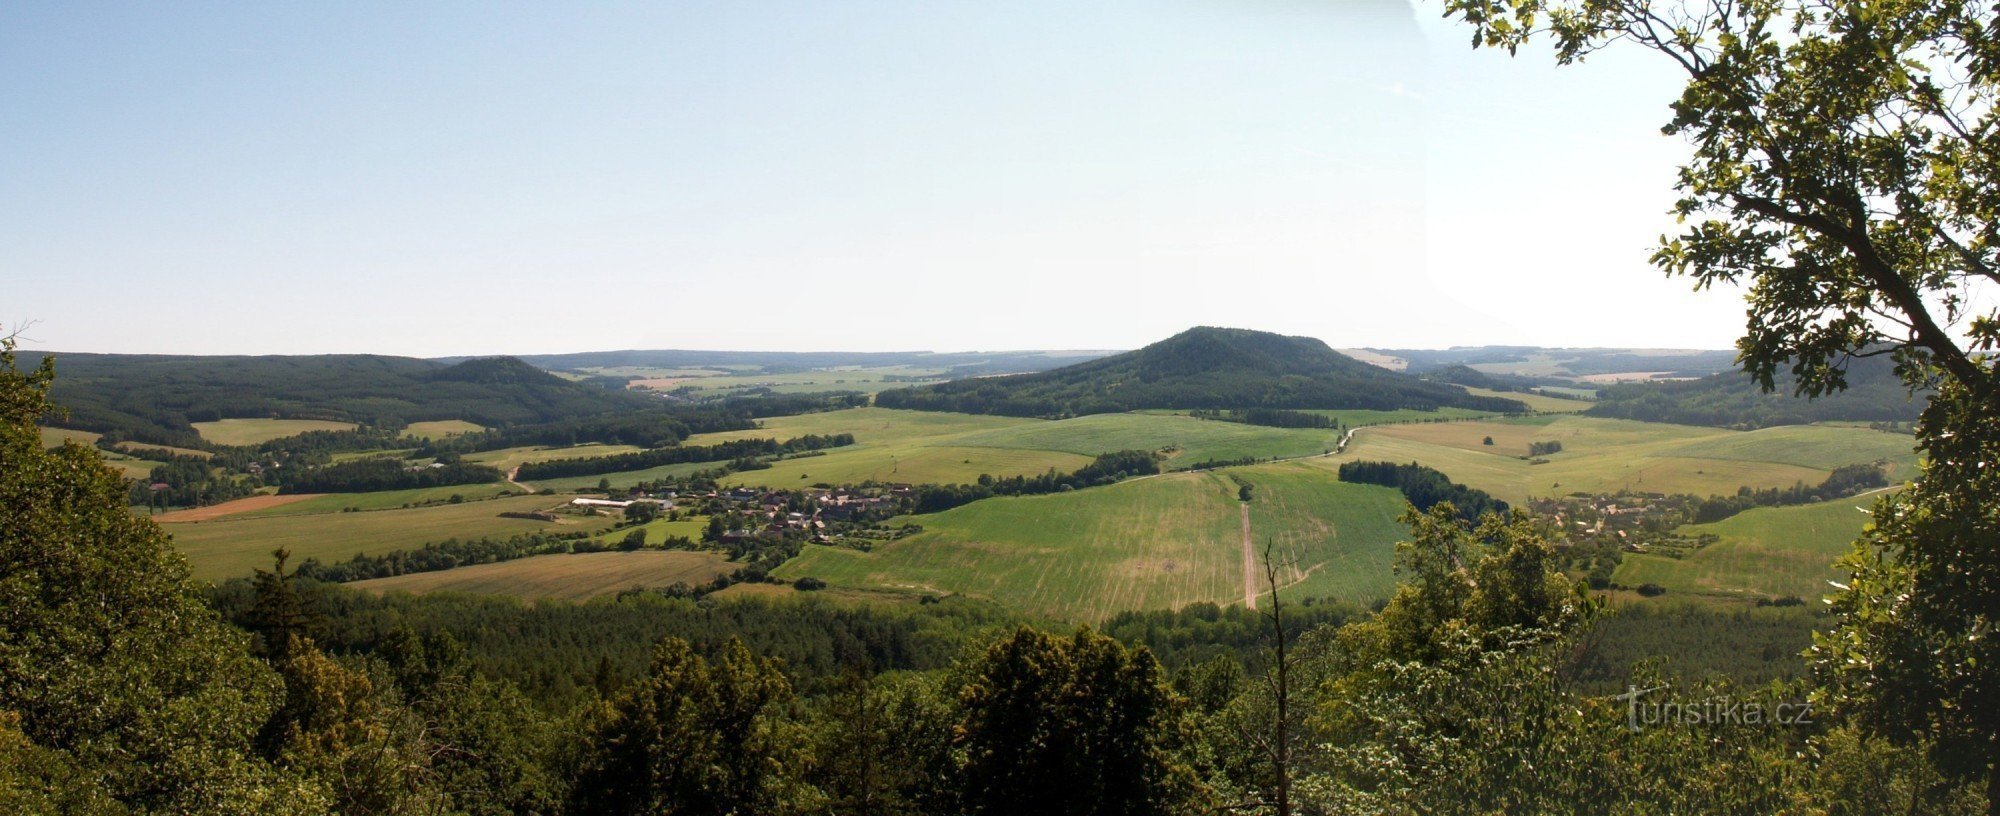 En vy över landskapet i regionen Manětín från utsiktspunkten